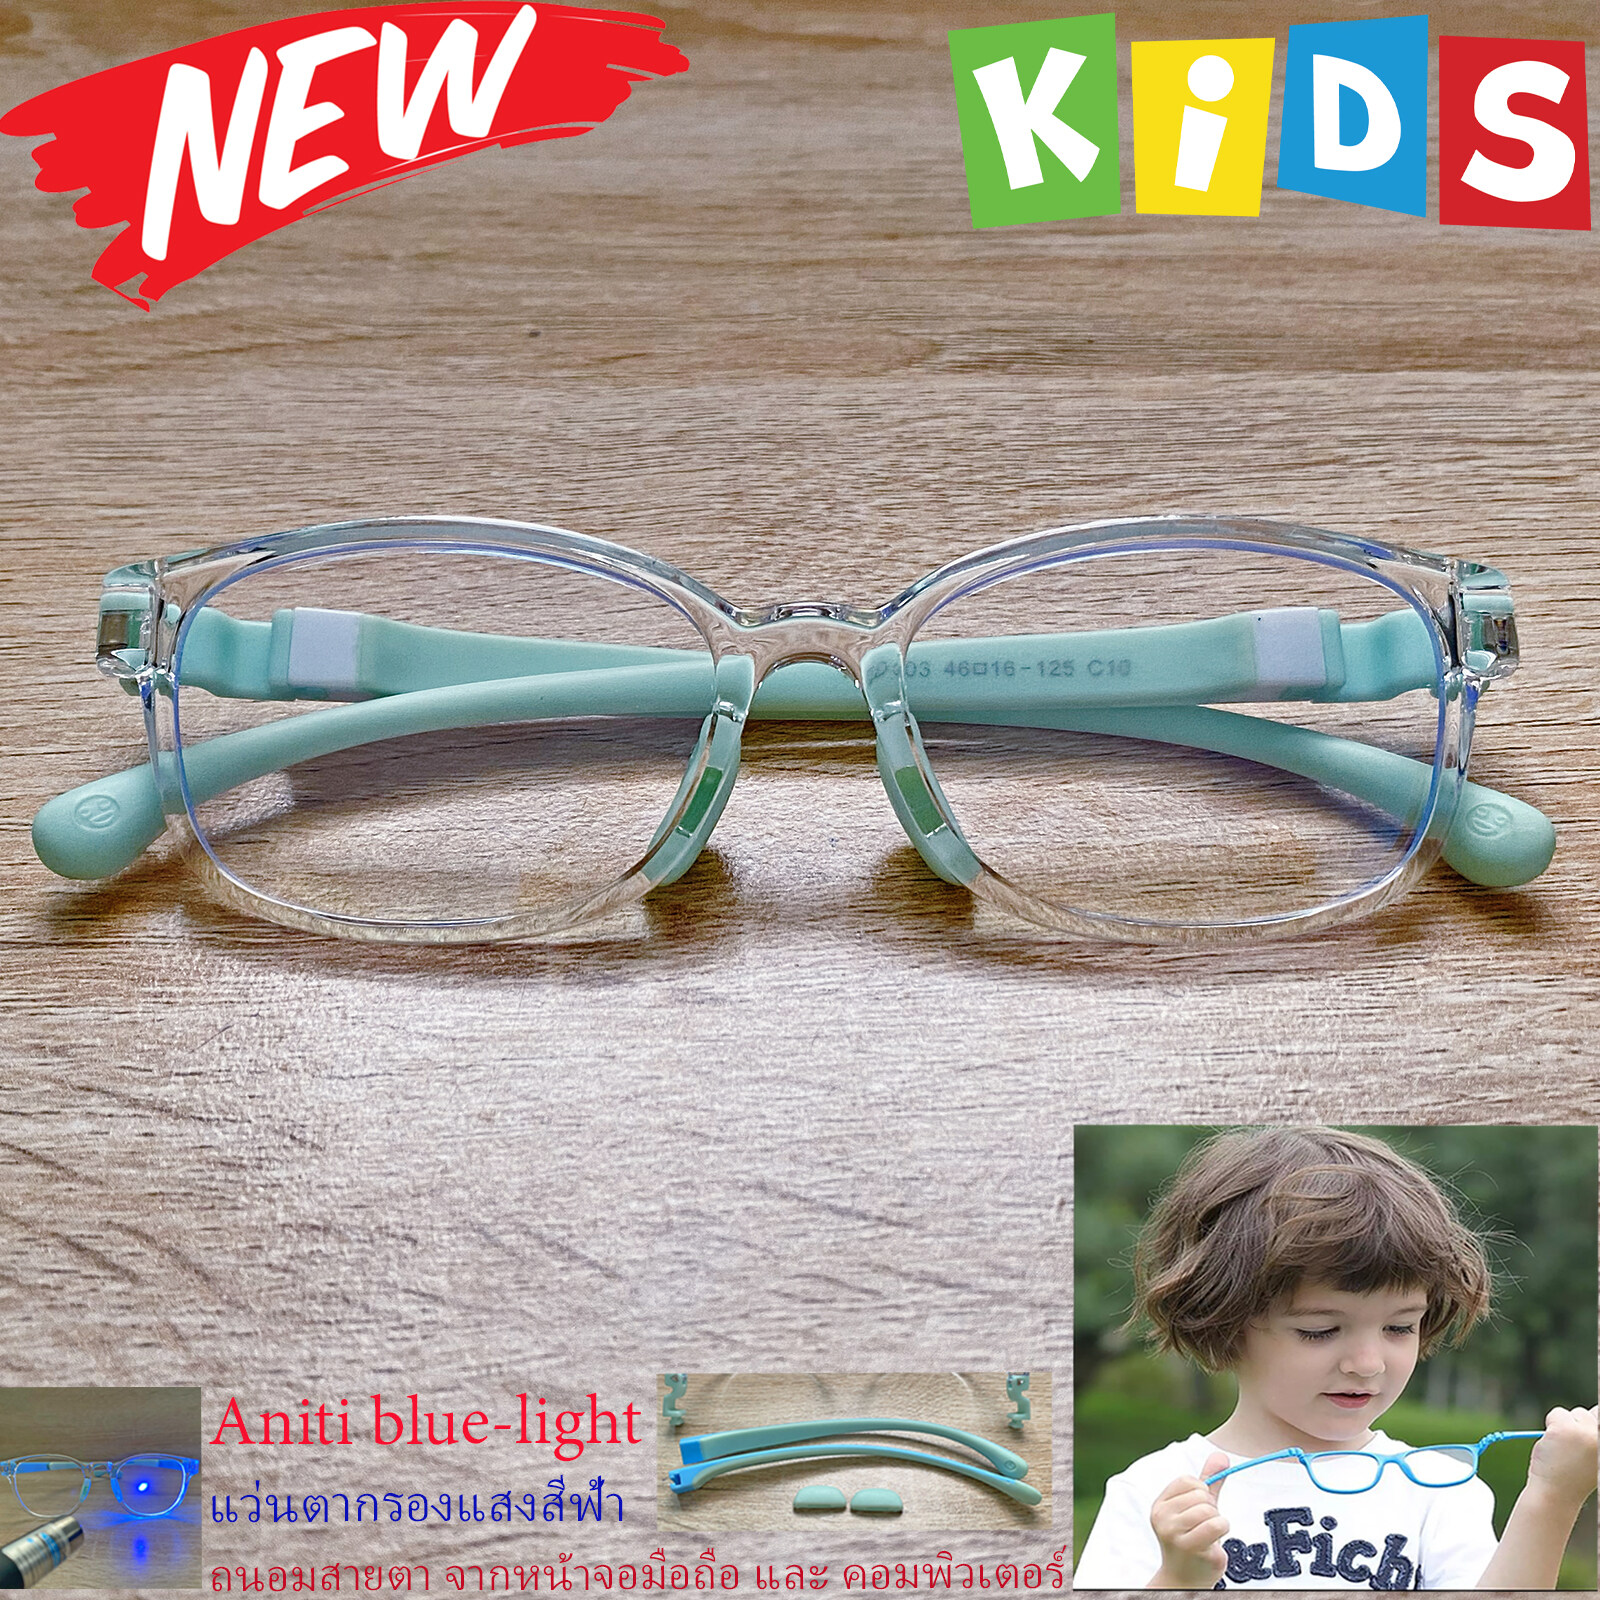 กรอบแว่นตาเด็ก กรองแสง สีฟ้า blue block แว่นเด็ก บลูบล็อค รุ่นTRD-03 กรอบใส ขาข้อต่อยืดหยุ่น ถอดขาเปลี่ยนได้ วัสดุTR90 เหมาะสำหรับเลนส์สายตา